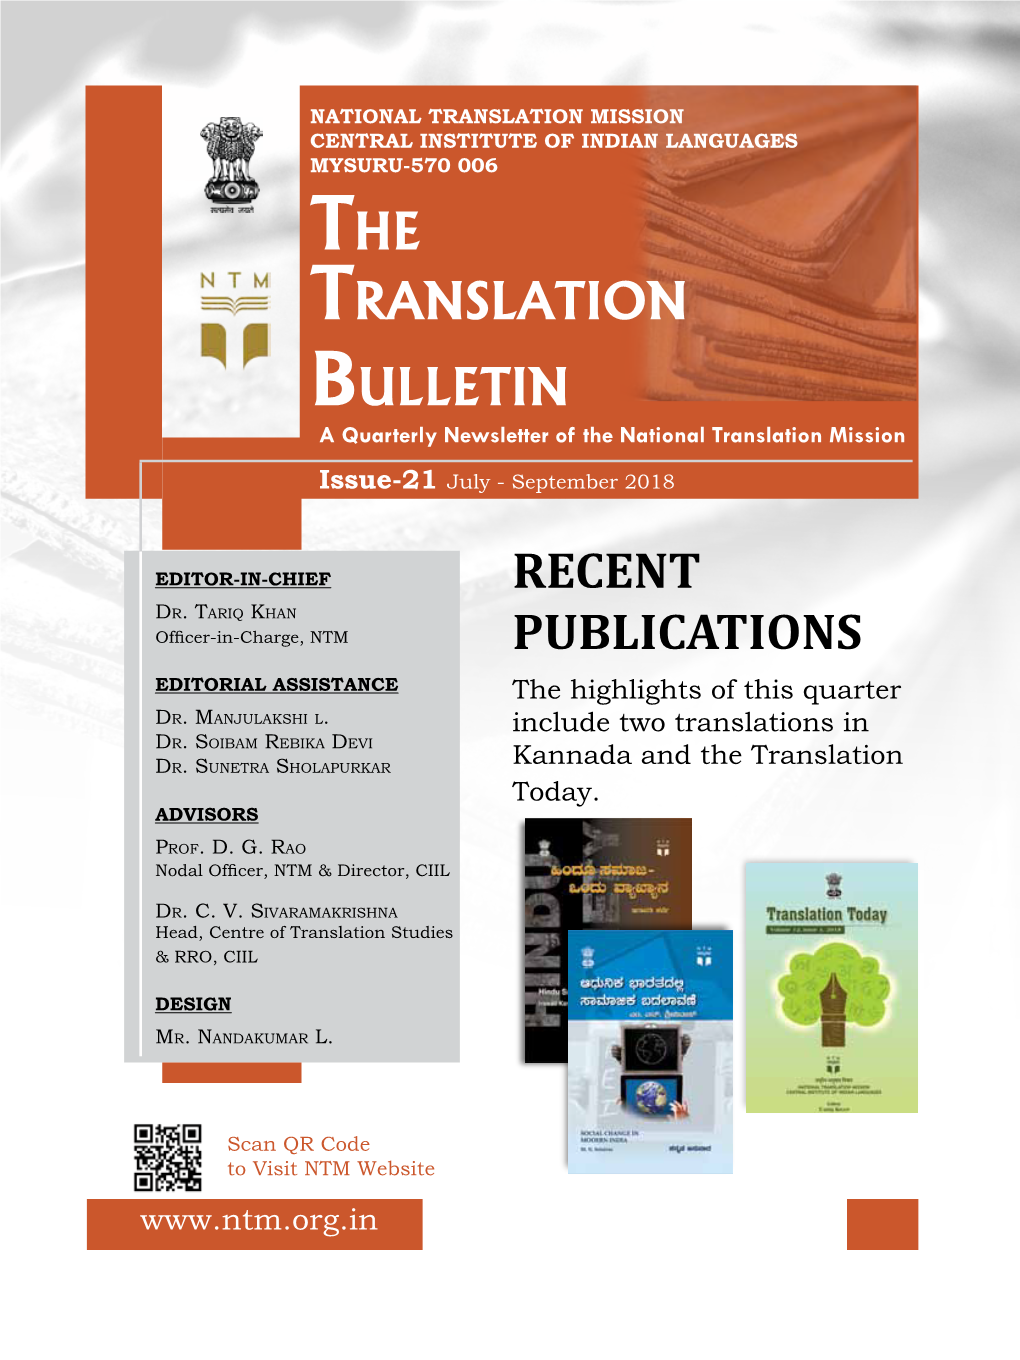 Recent Publications